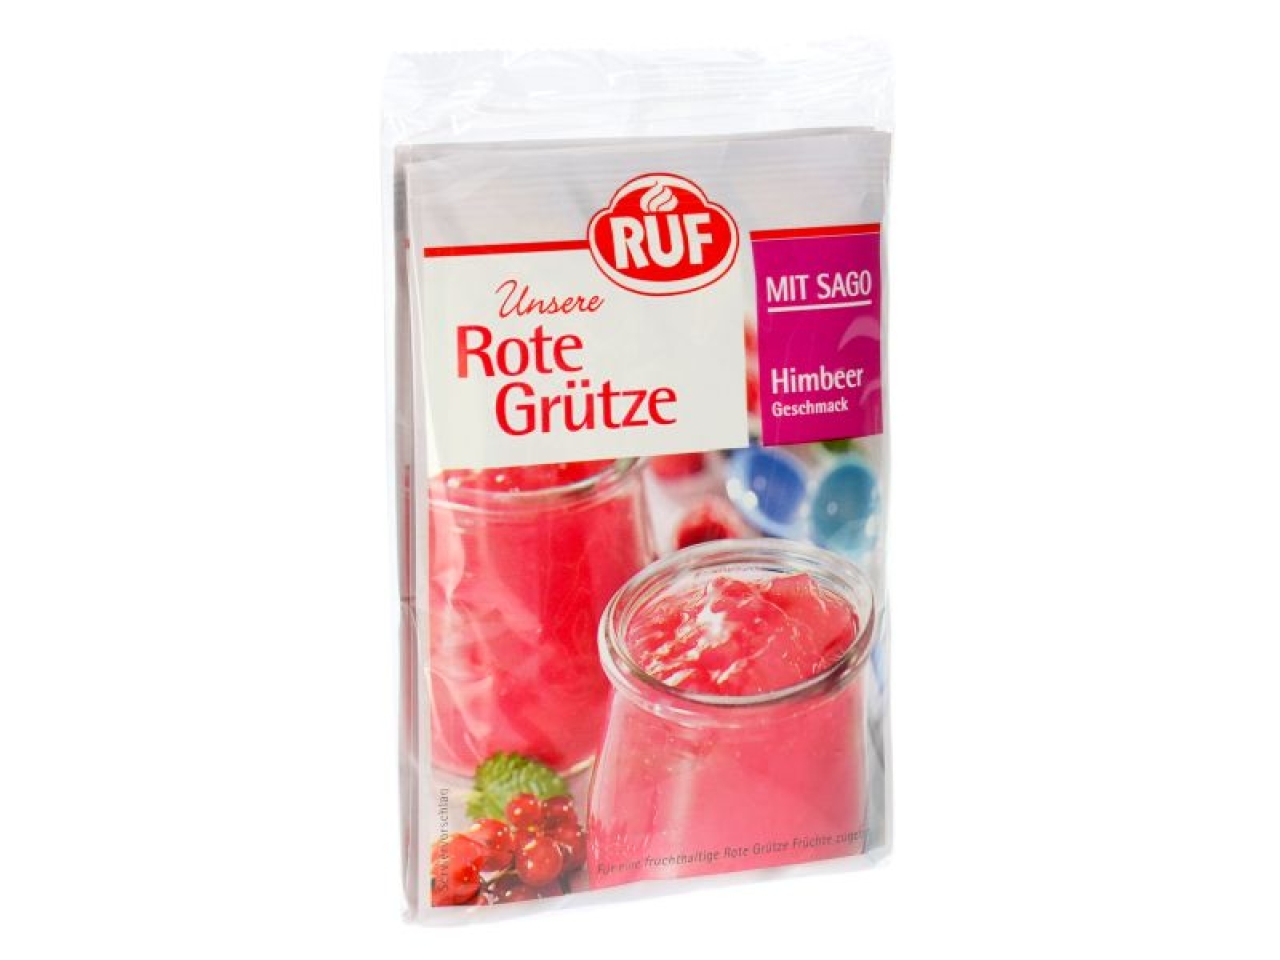 RUF Rote Grütze Himbeer mit Sago 3er Pack 3x43g